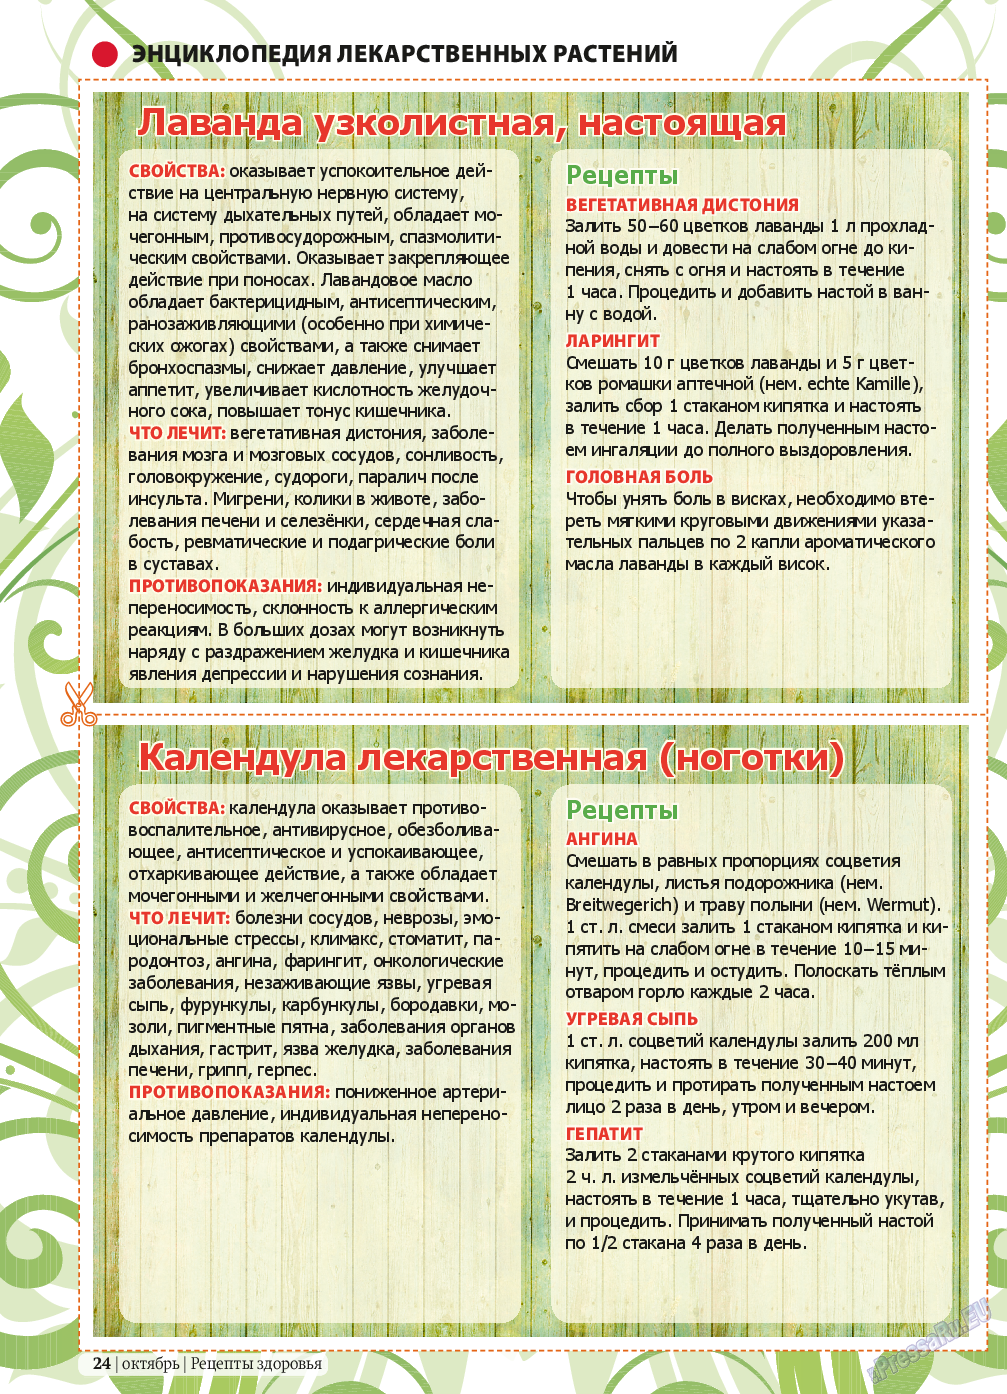 Рецепты здоровья (журнал). 2013 год, номер 10, стр. 24